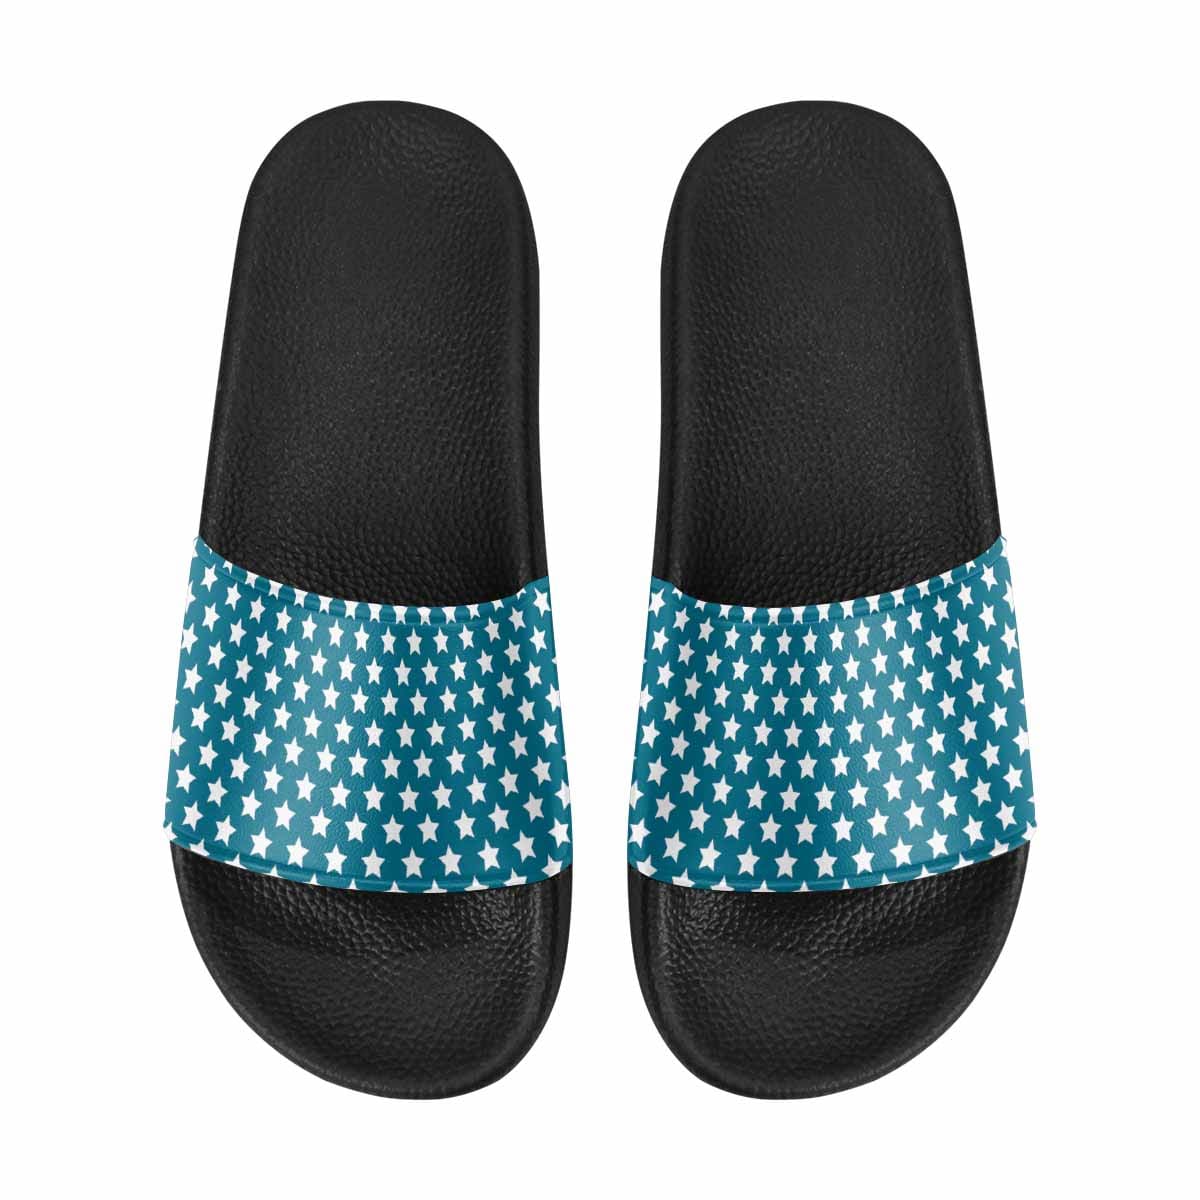 Mens Slide Sandals Aqua Blue And White Stars - Mens | Slides